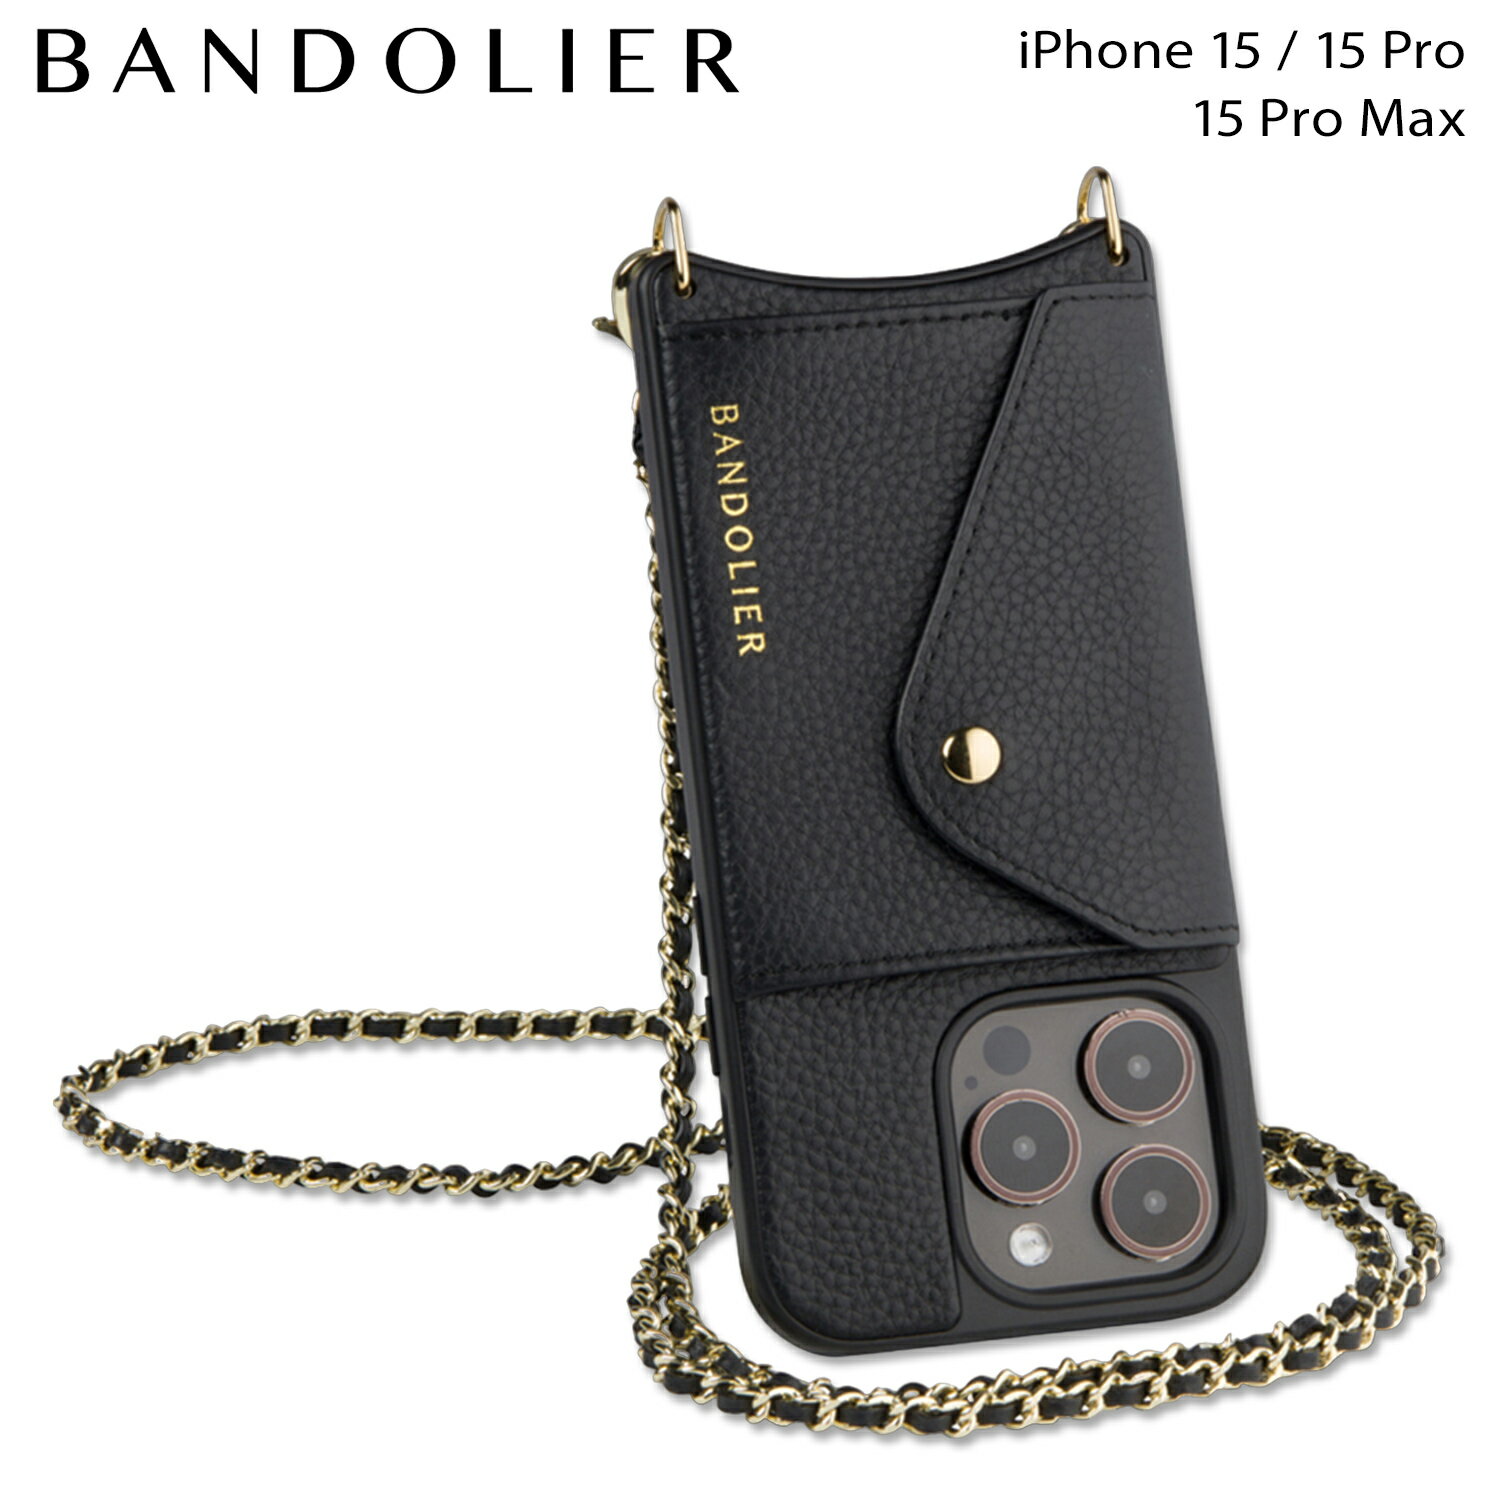 BANDOLIER バンドリヤー iPhone15 15Pro iPhone 15 Pro Max スマホケース スマホショルダー 携帯 アイフォン リリー ゴールド バンドレット セット メンズ レディース LILY GOLD BANDOLET SET ブラック 黒 14LIL